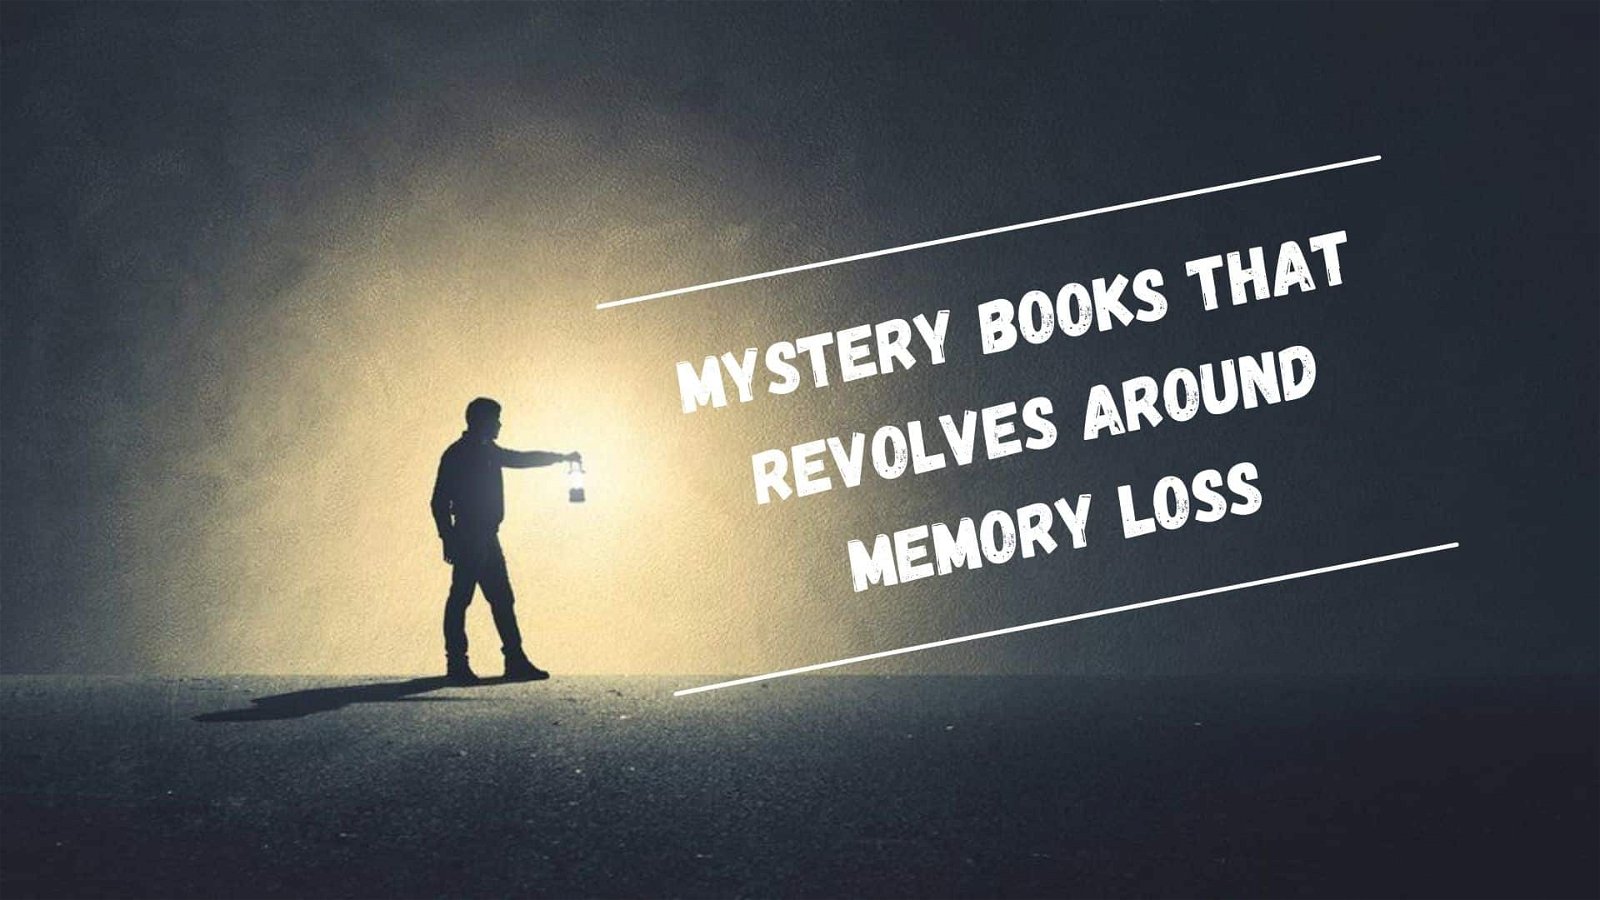 Livres mystérieux qui tournent autour de la perte de mémoire